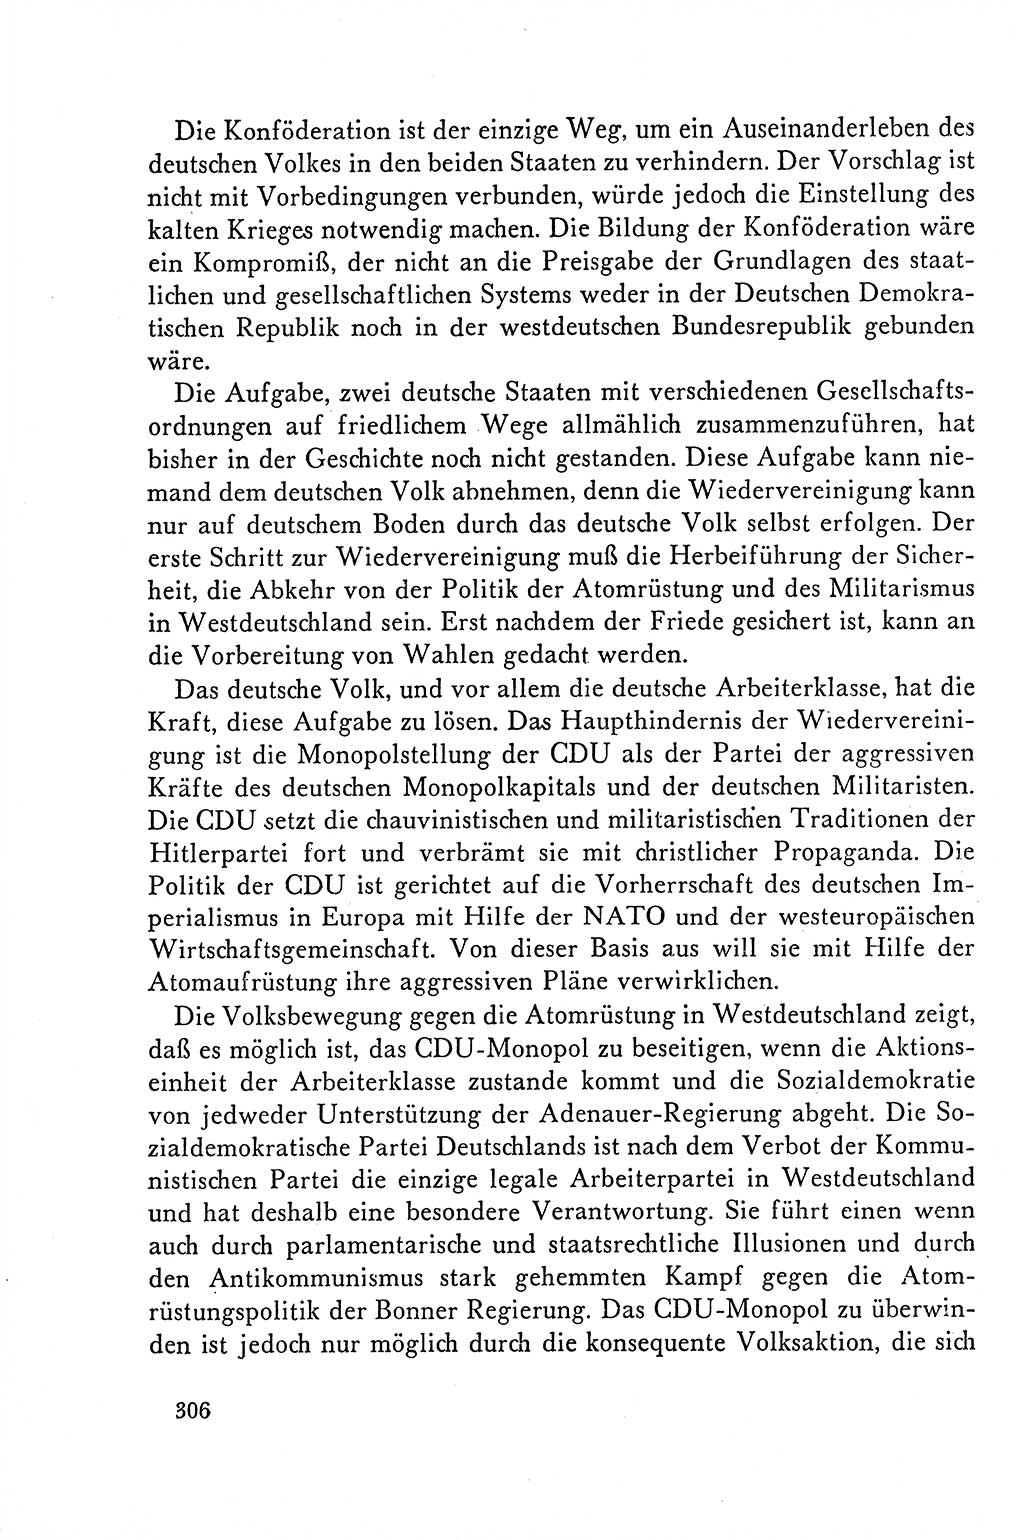 Dokumente der Sozialistischen Einheitspartei Deutschlands (SED) [Deutsche Demokratische Republik (DDR)] 1958-1959, Seite 306 (Dok. SED DDR 1958-1959, S. 306)